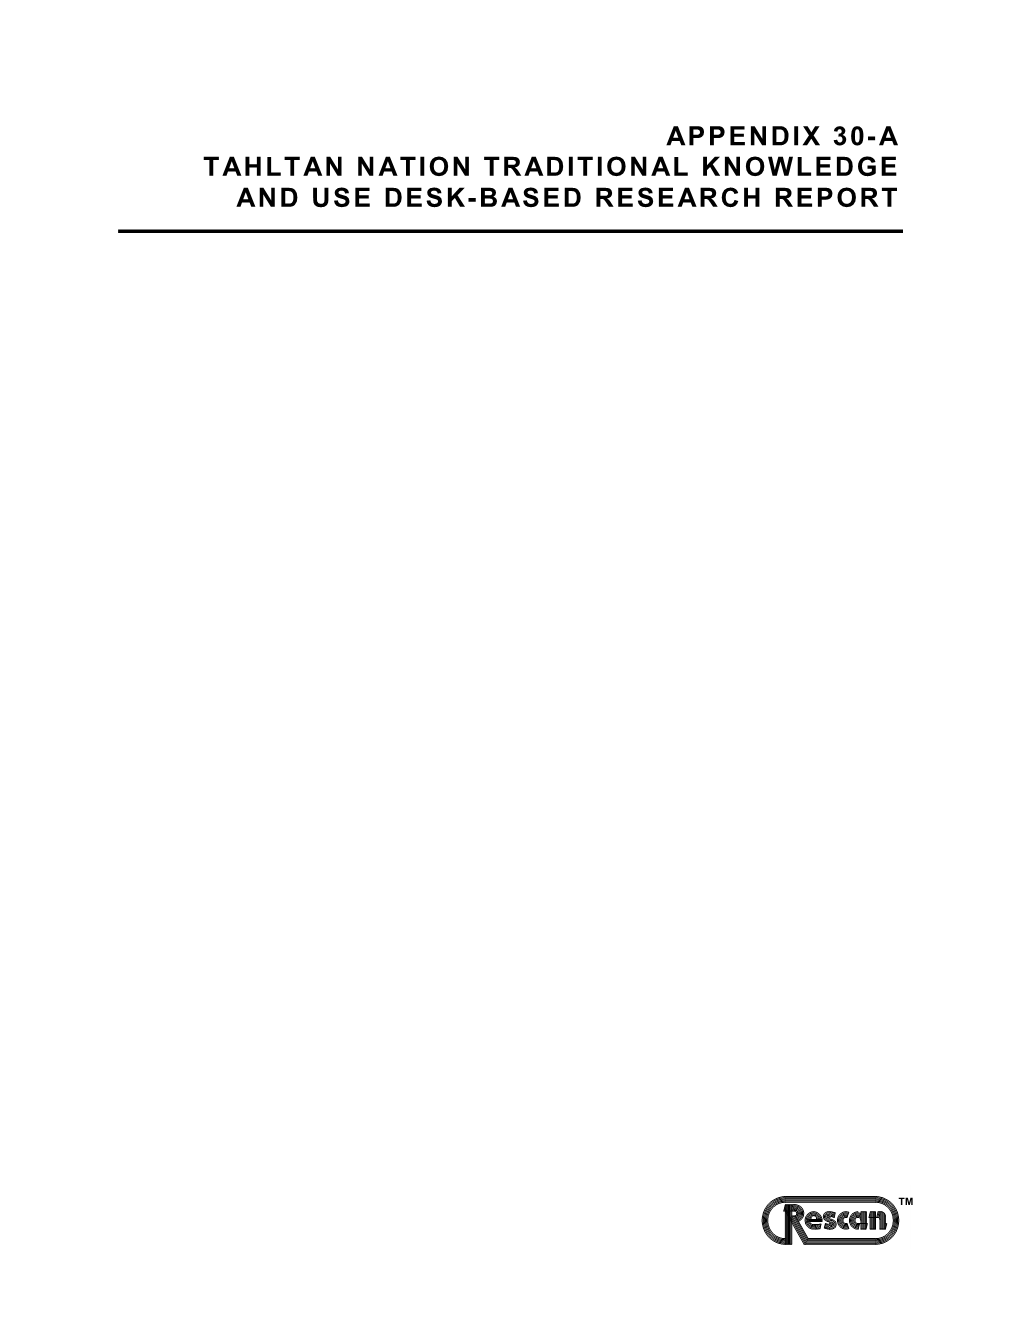 0868-017-11 Rep KSM Tahltan Desk-Based Report